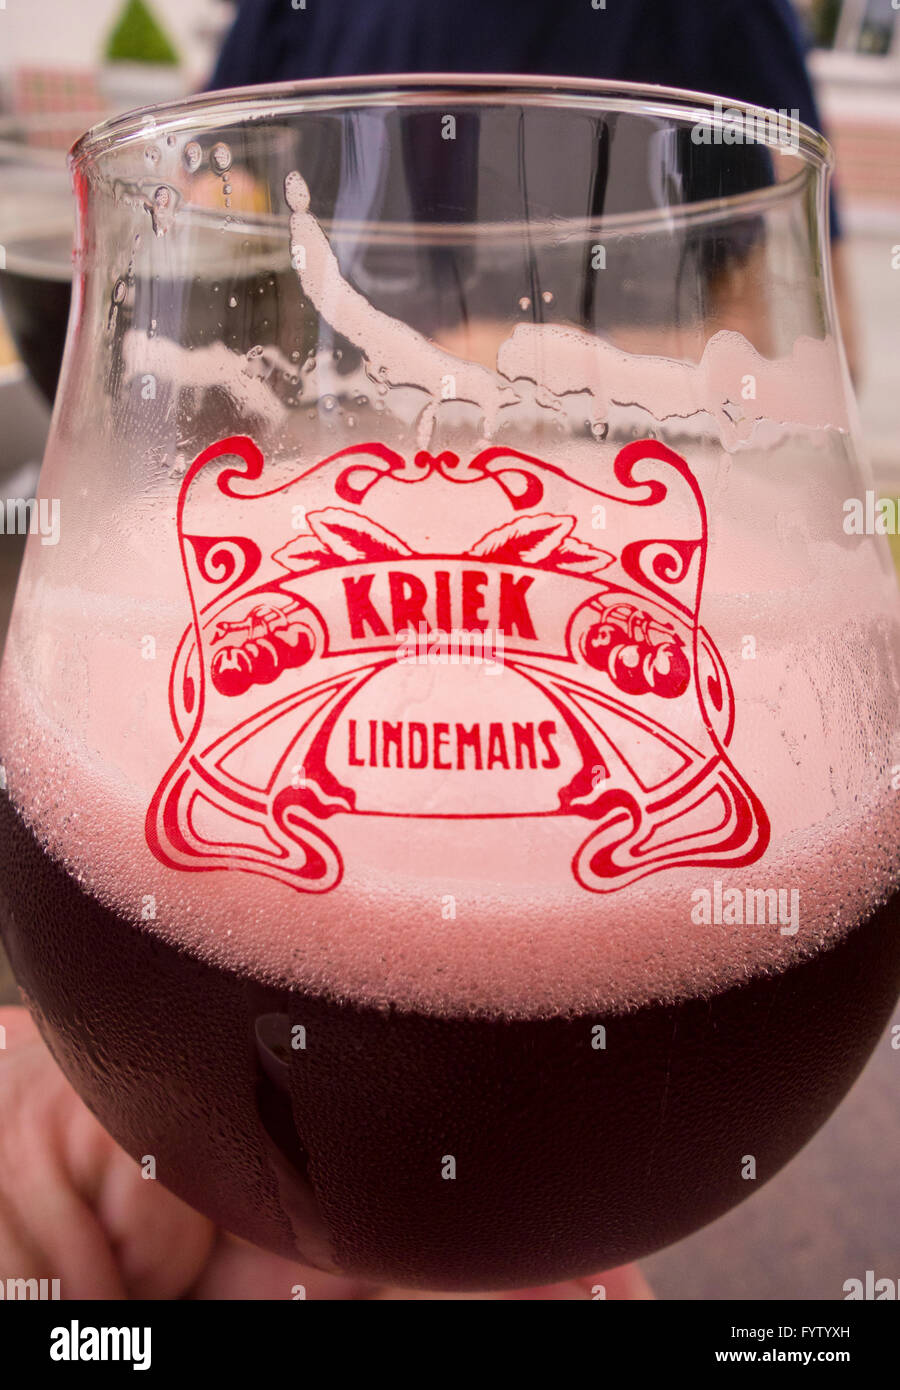 BELGIUM - Glass of Lindemans Kriek, cherry flavored beer in glass. Stock Photo